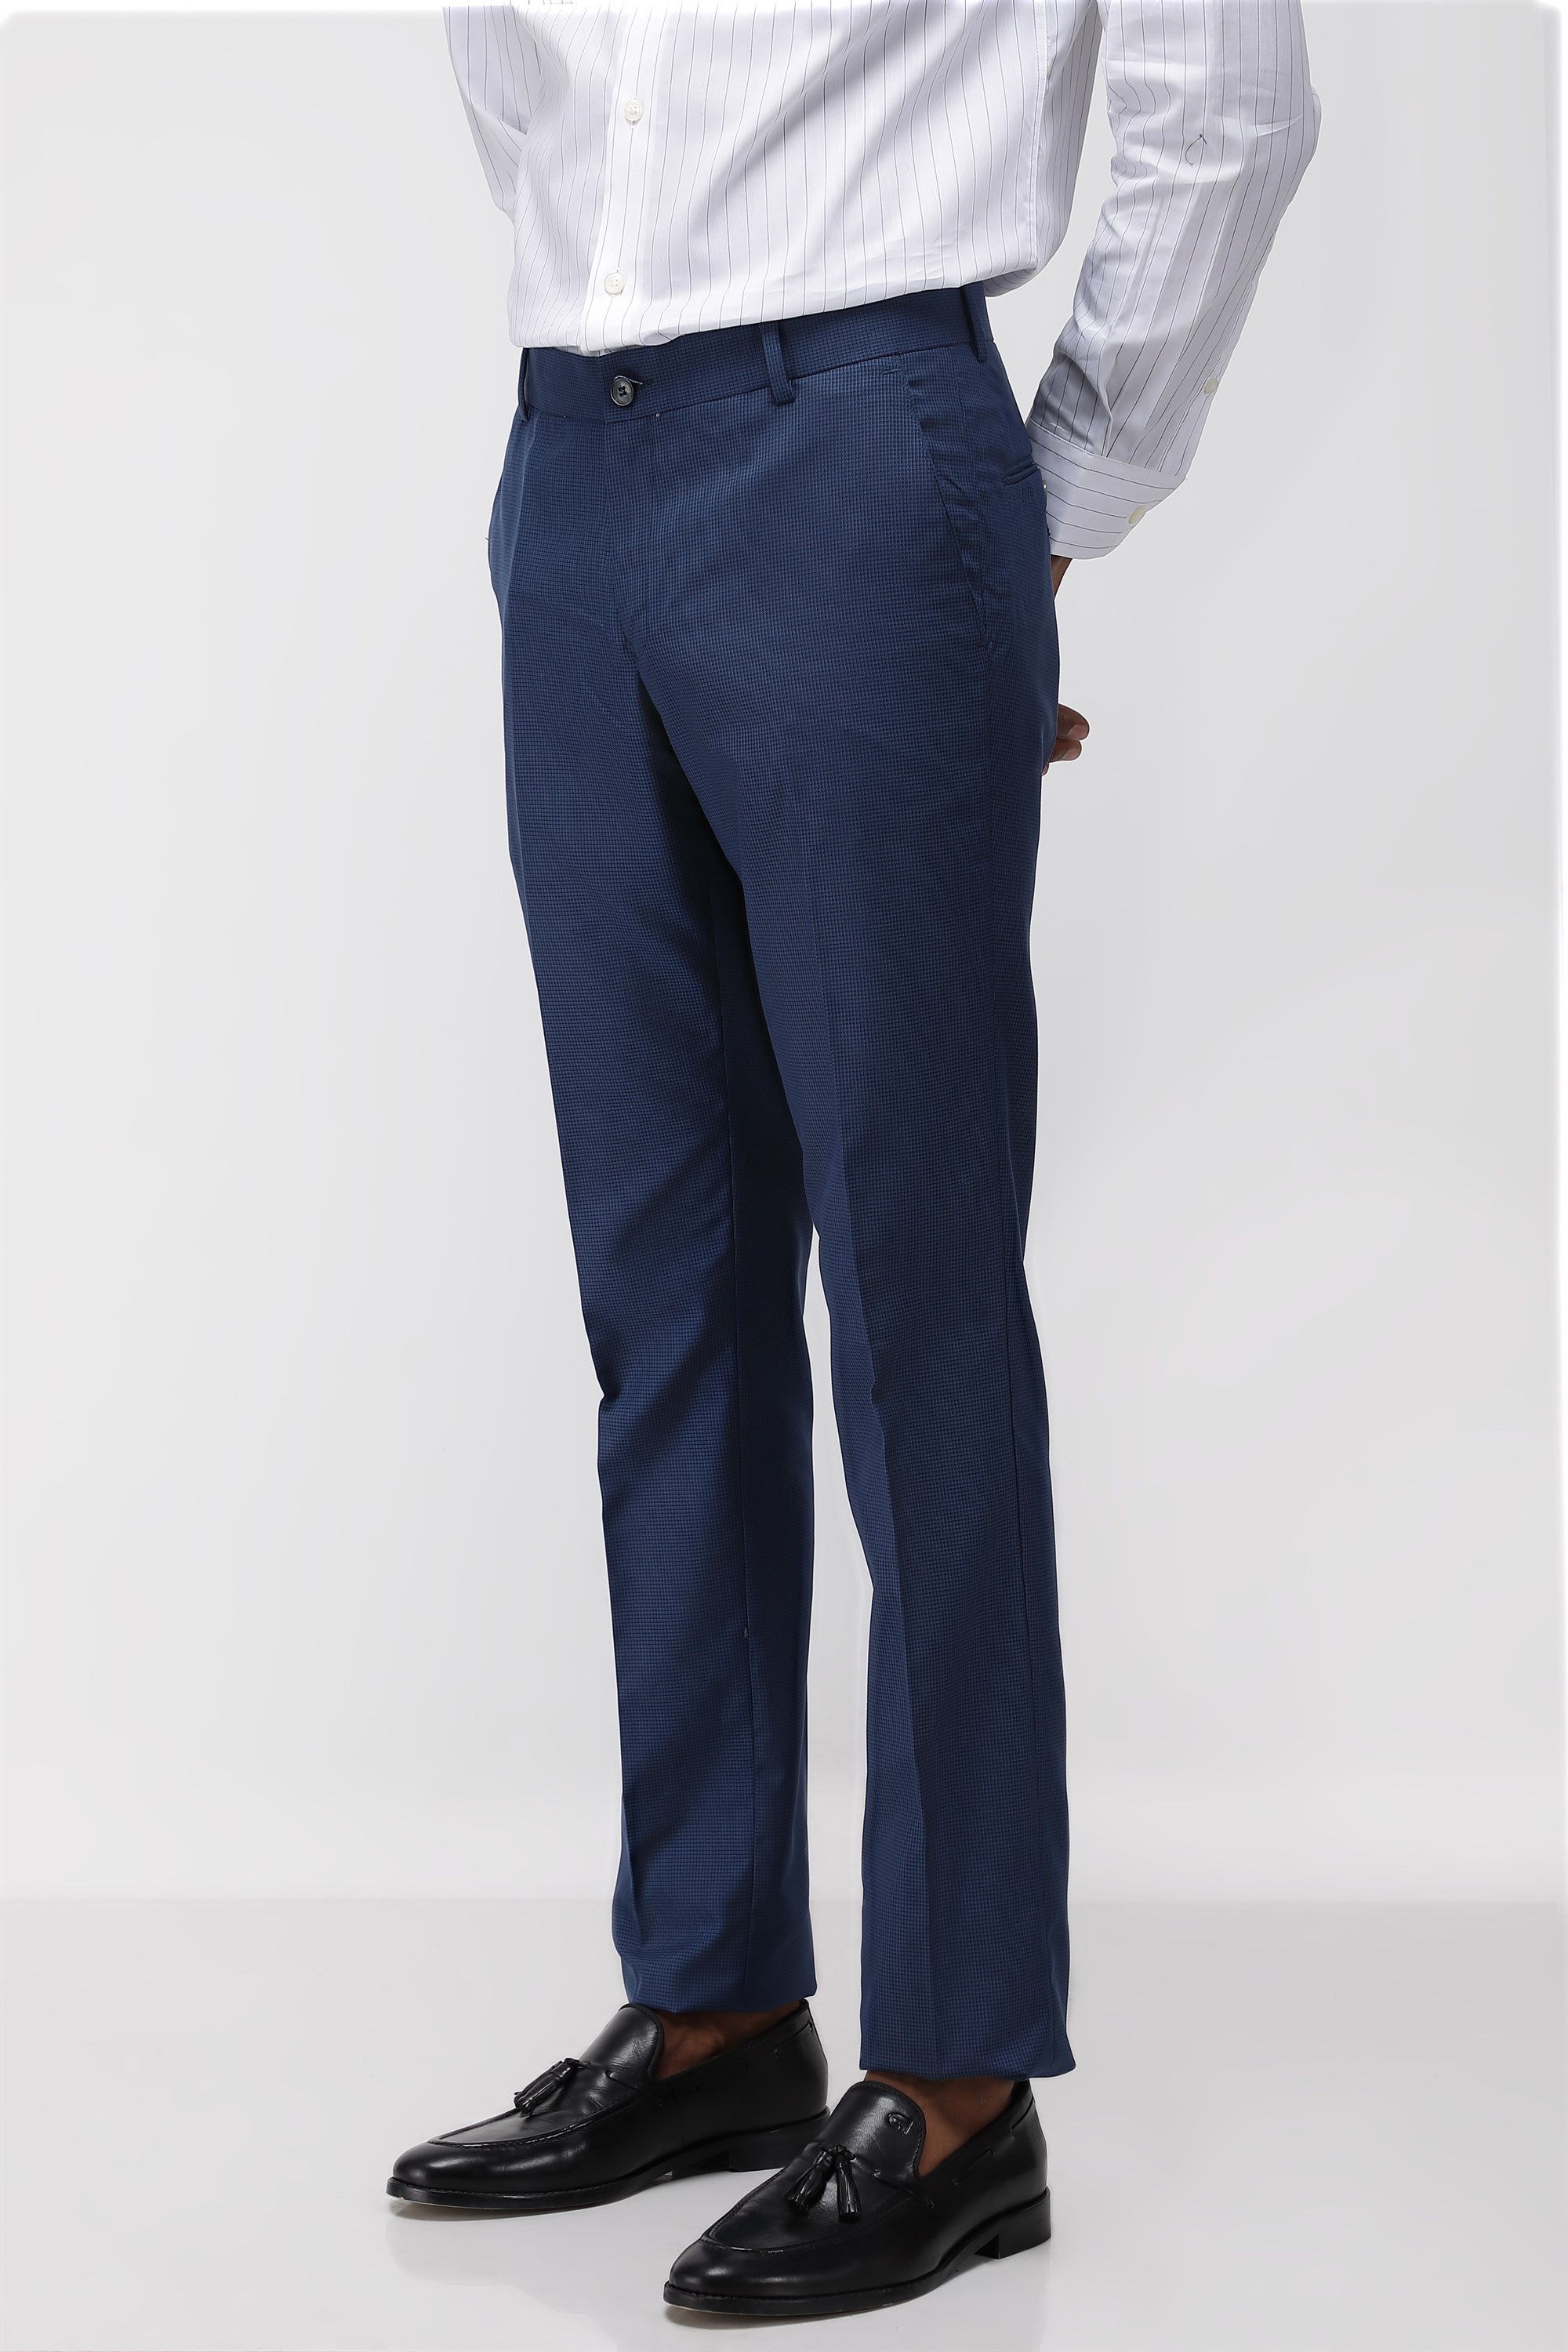 Next Look Men Dark Blue Trousers - Buy Next Look Men Dark Blue Trousers  Online at Best Prices in India | Flipkart.com